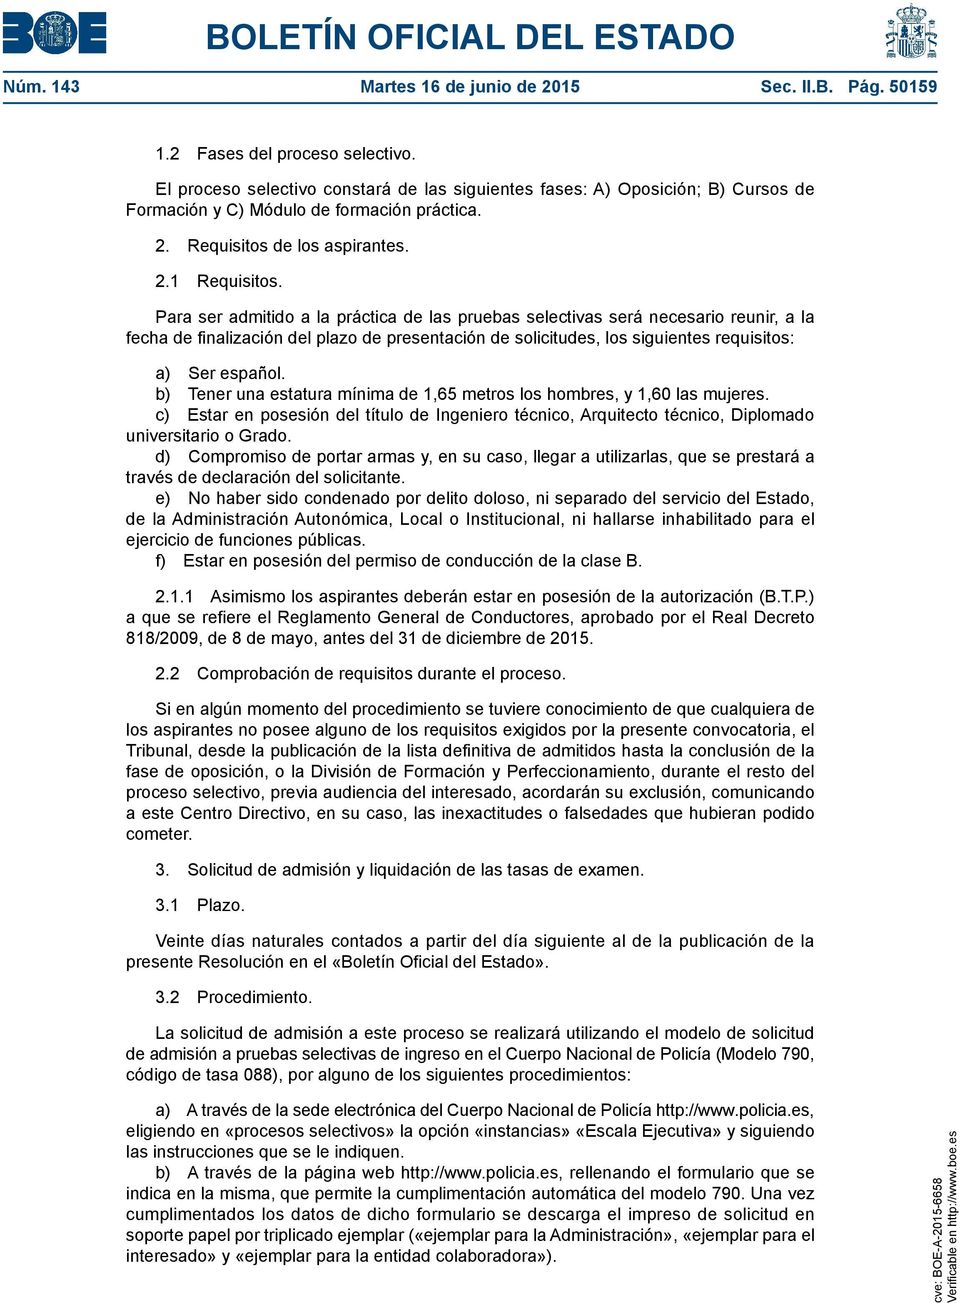 Para ser admitido a la práctica de las pruebas selectivas será necesario reunir, a la fecha de finalización del plazo de presentación de solicitudes, los siguientes requisitos: a) Ser español.